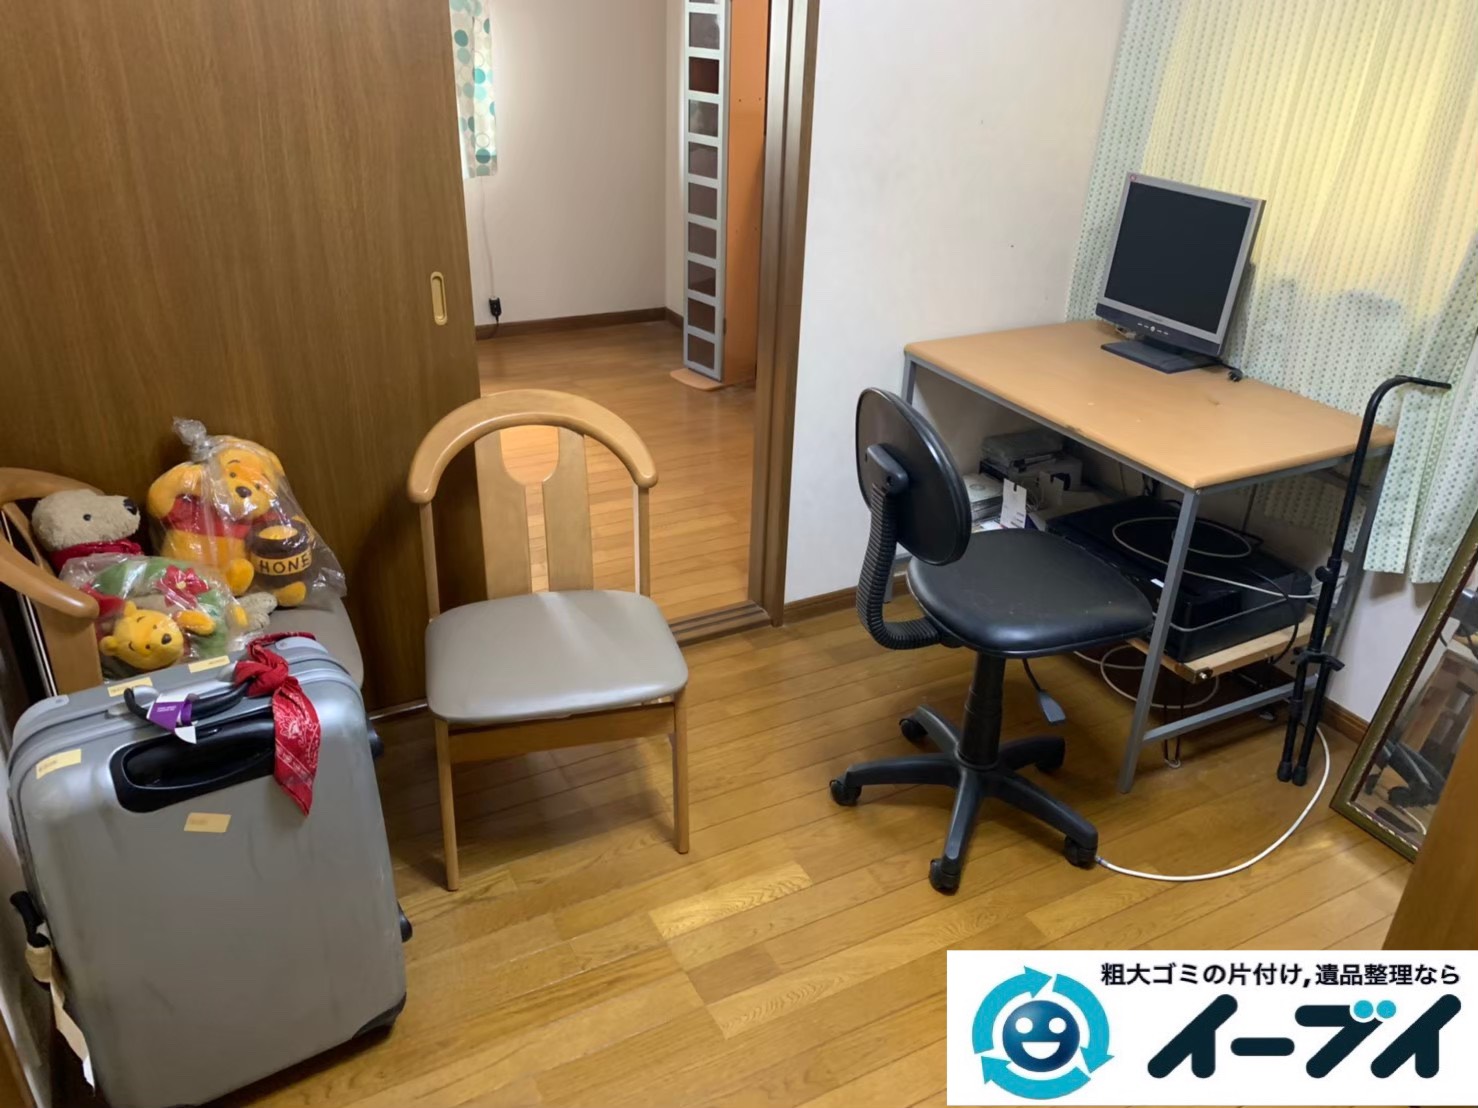 2019年12月17日大阪府熊取町でデスクや椅子の家具処分、物置の不用品回収をしました。写真4